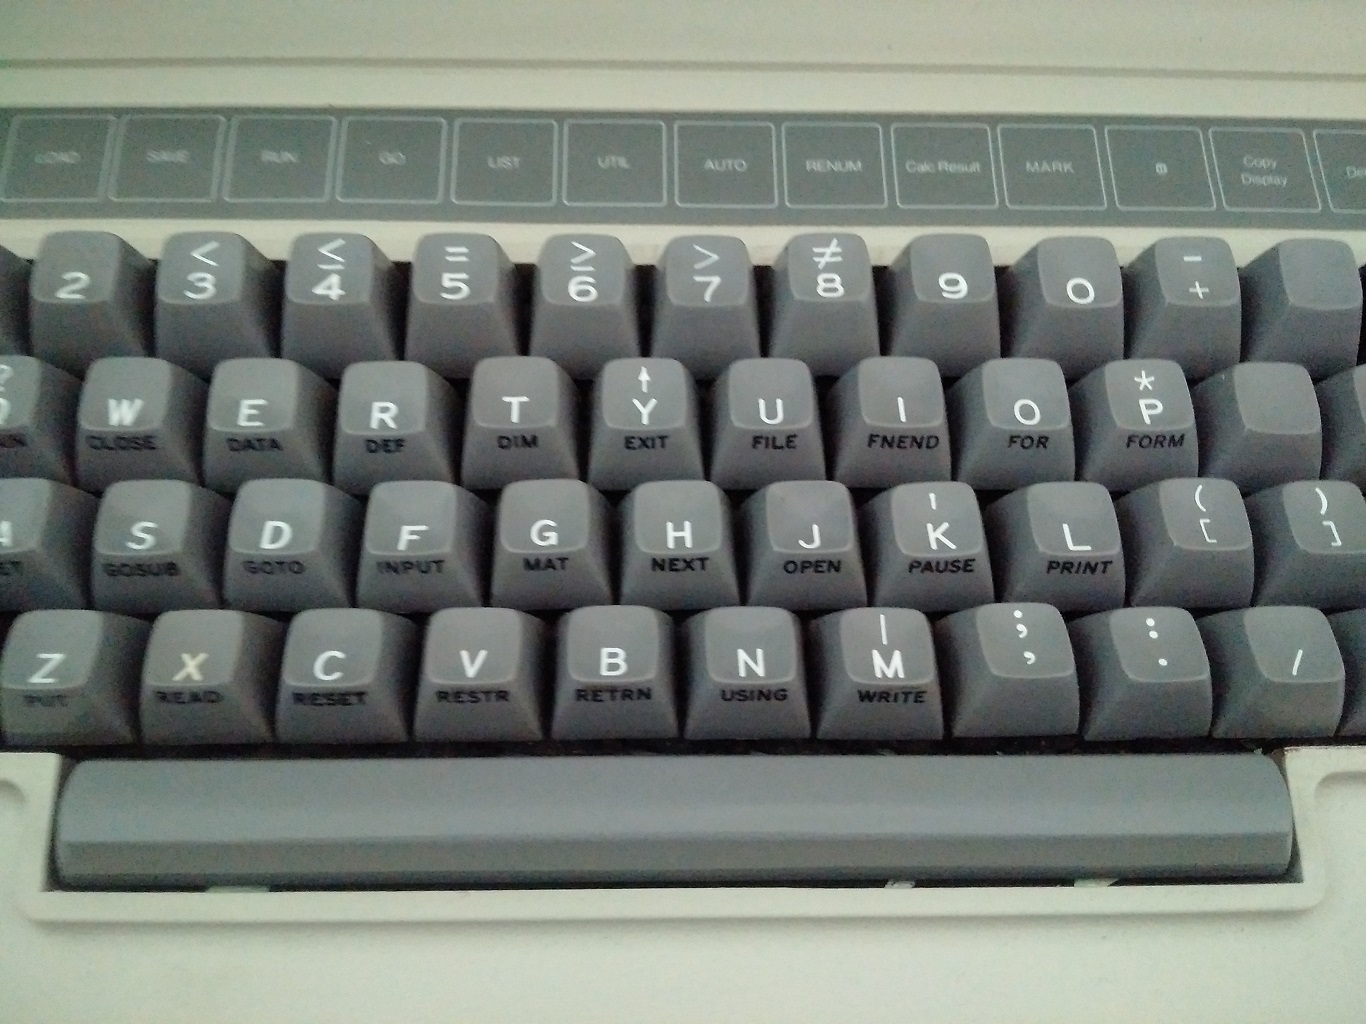 IBM 5120 - keyboard close up